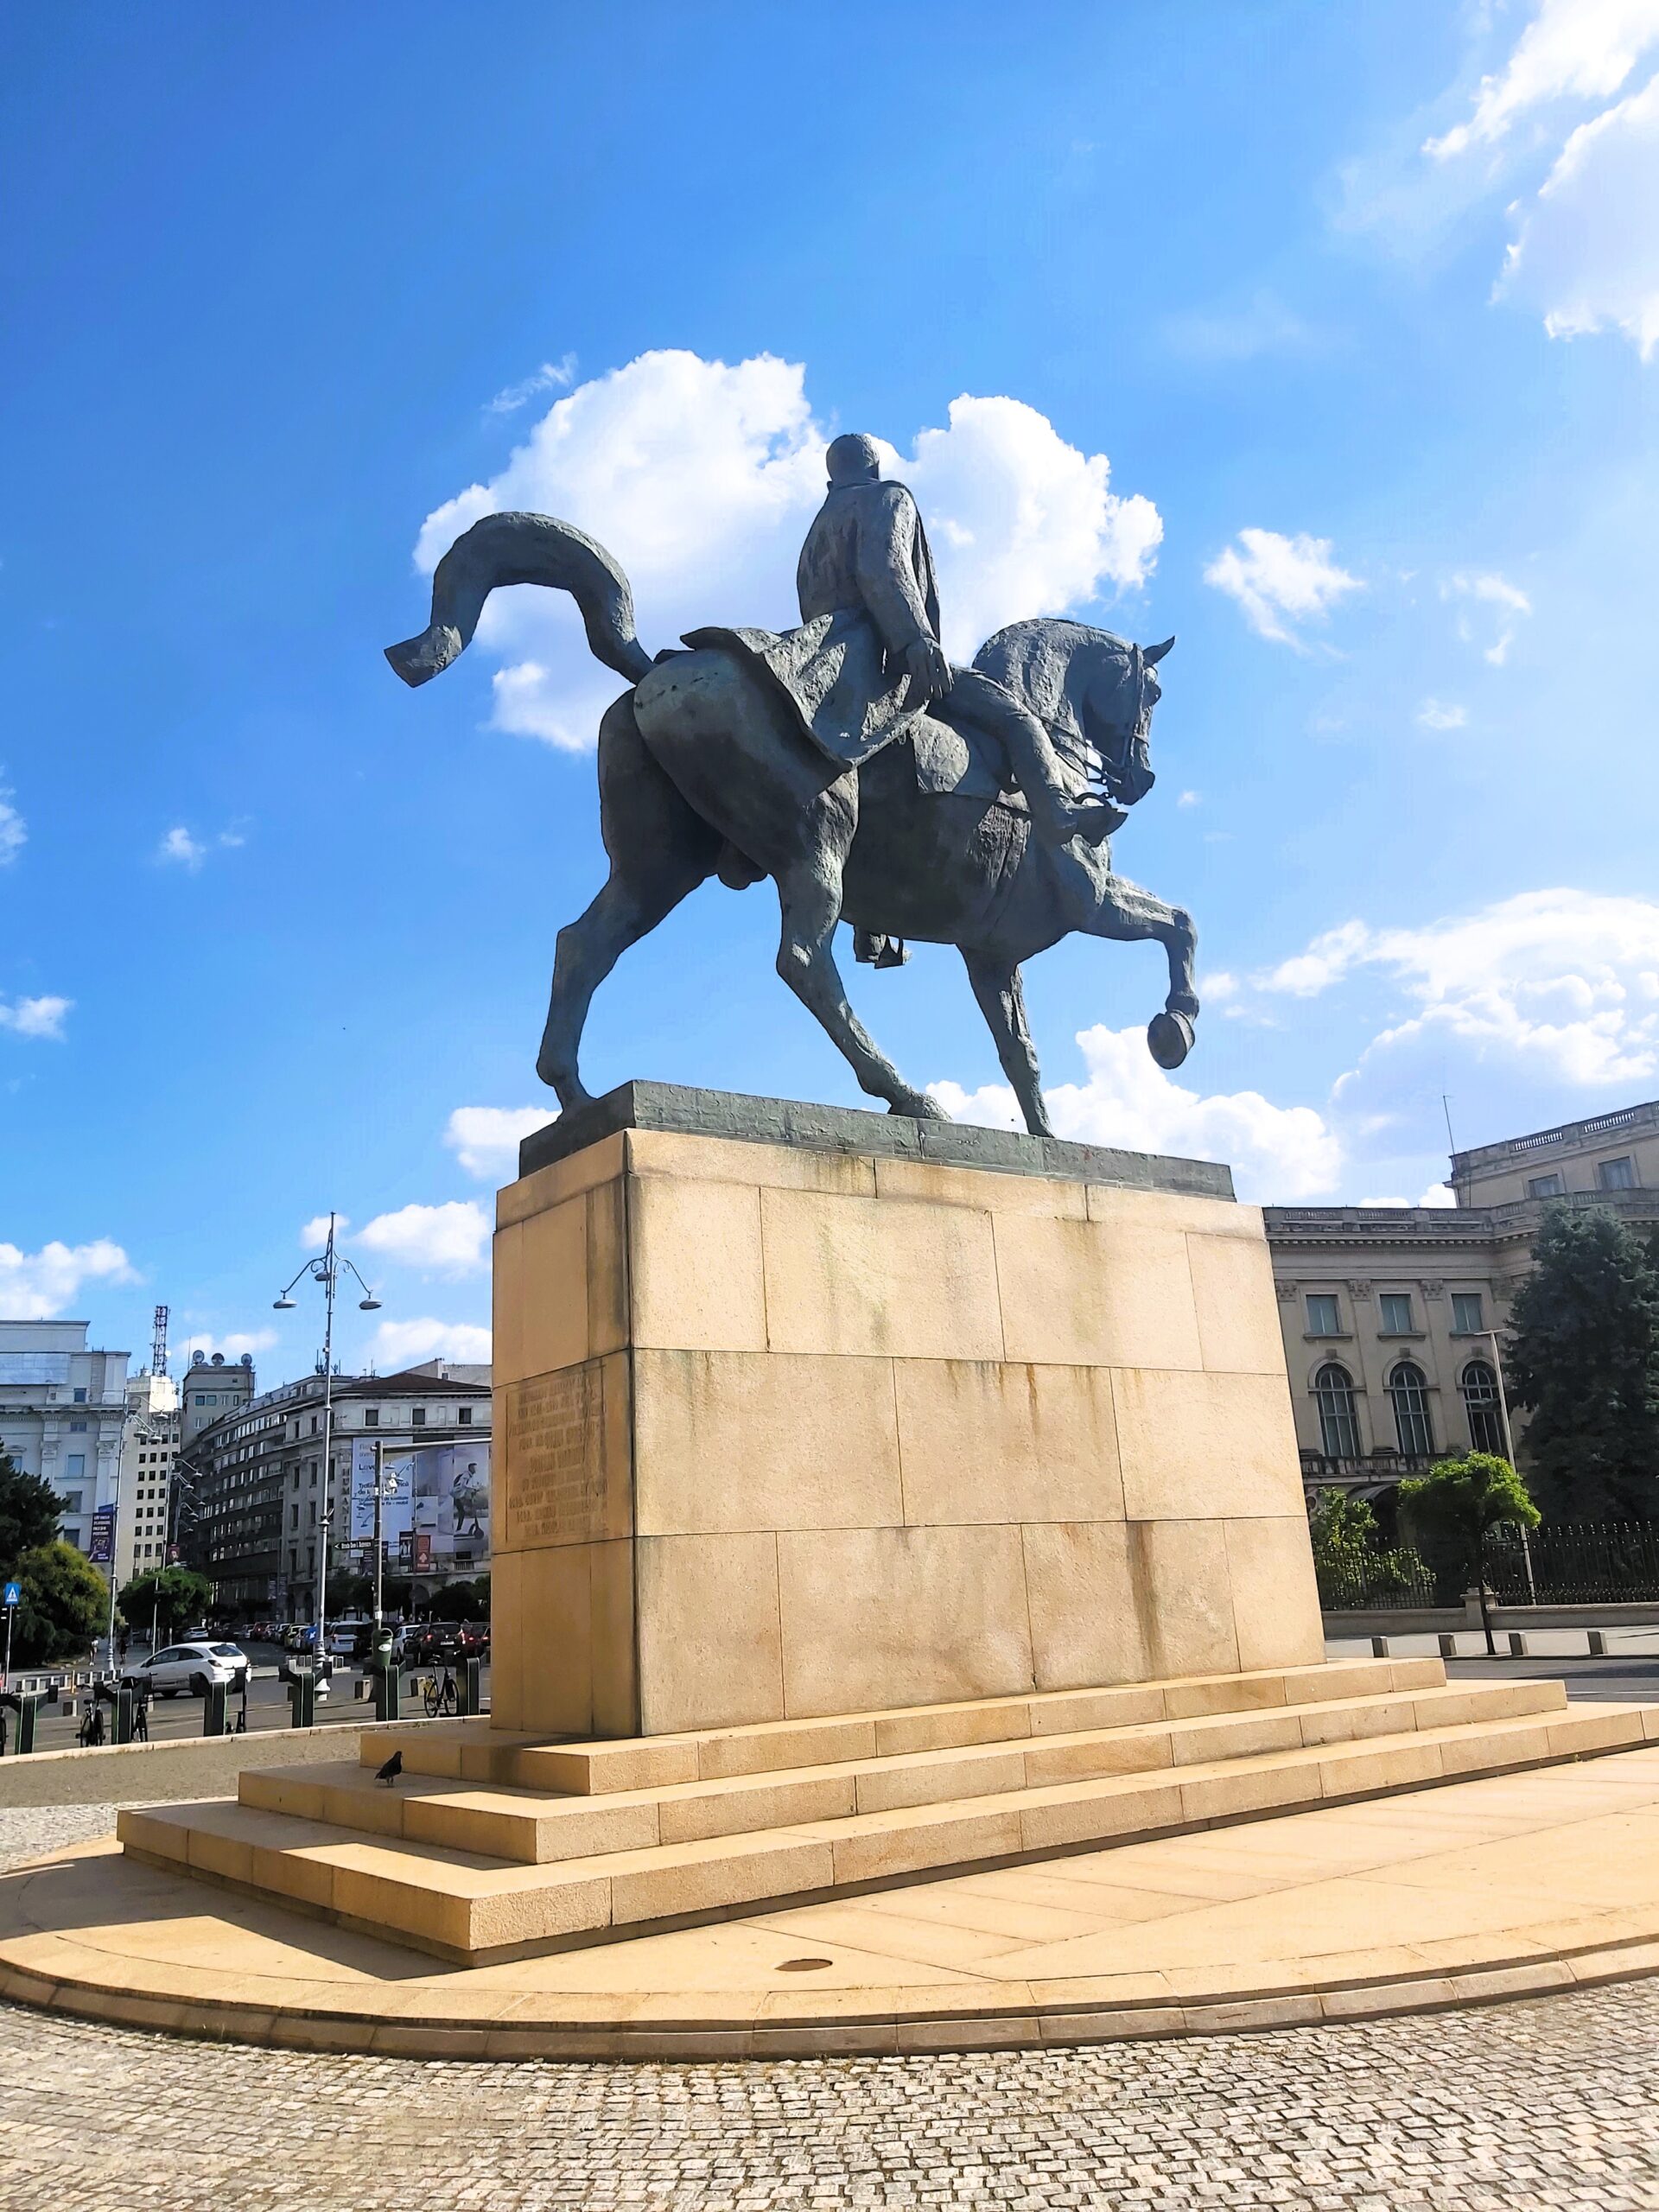 A rear view of a horse statue in București, Romania